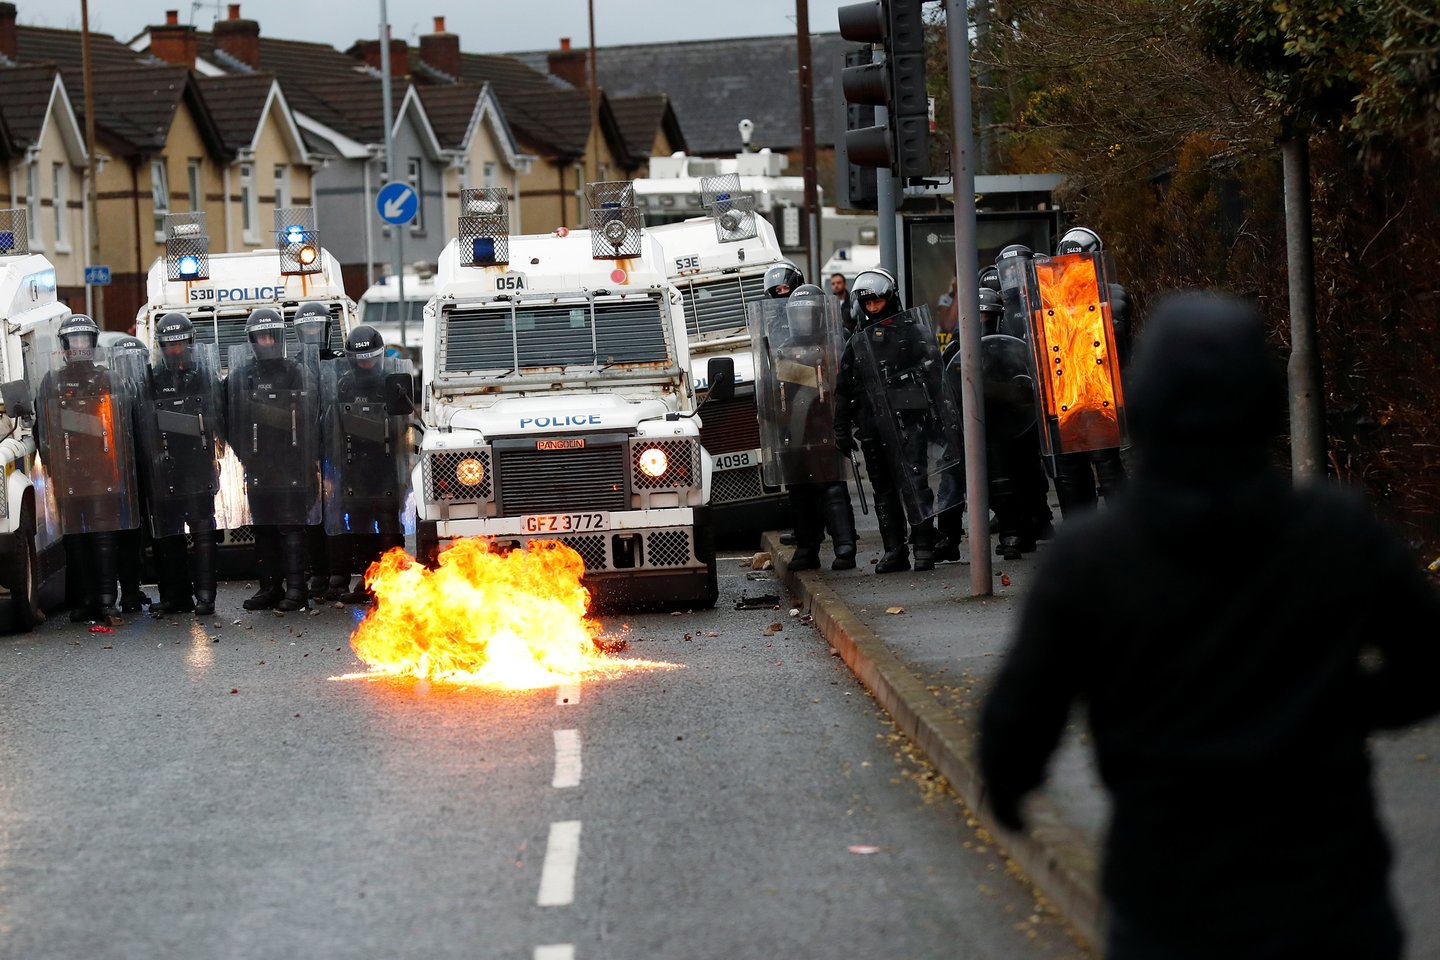 Pasak policijos, smurtas tęsėsi ir naktį į šeštadienį, nors ir mažesniu mastu, palyginti su anksčiau šią savaitę kitose Belfasto dalyse vykusiais susirėmimais.<br>REUTERS/Scanpix nuotr.